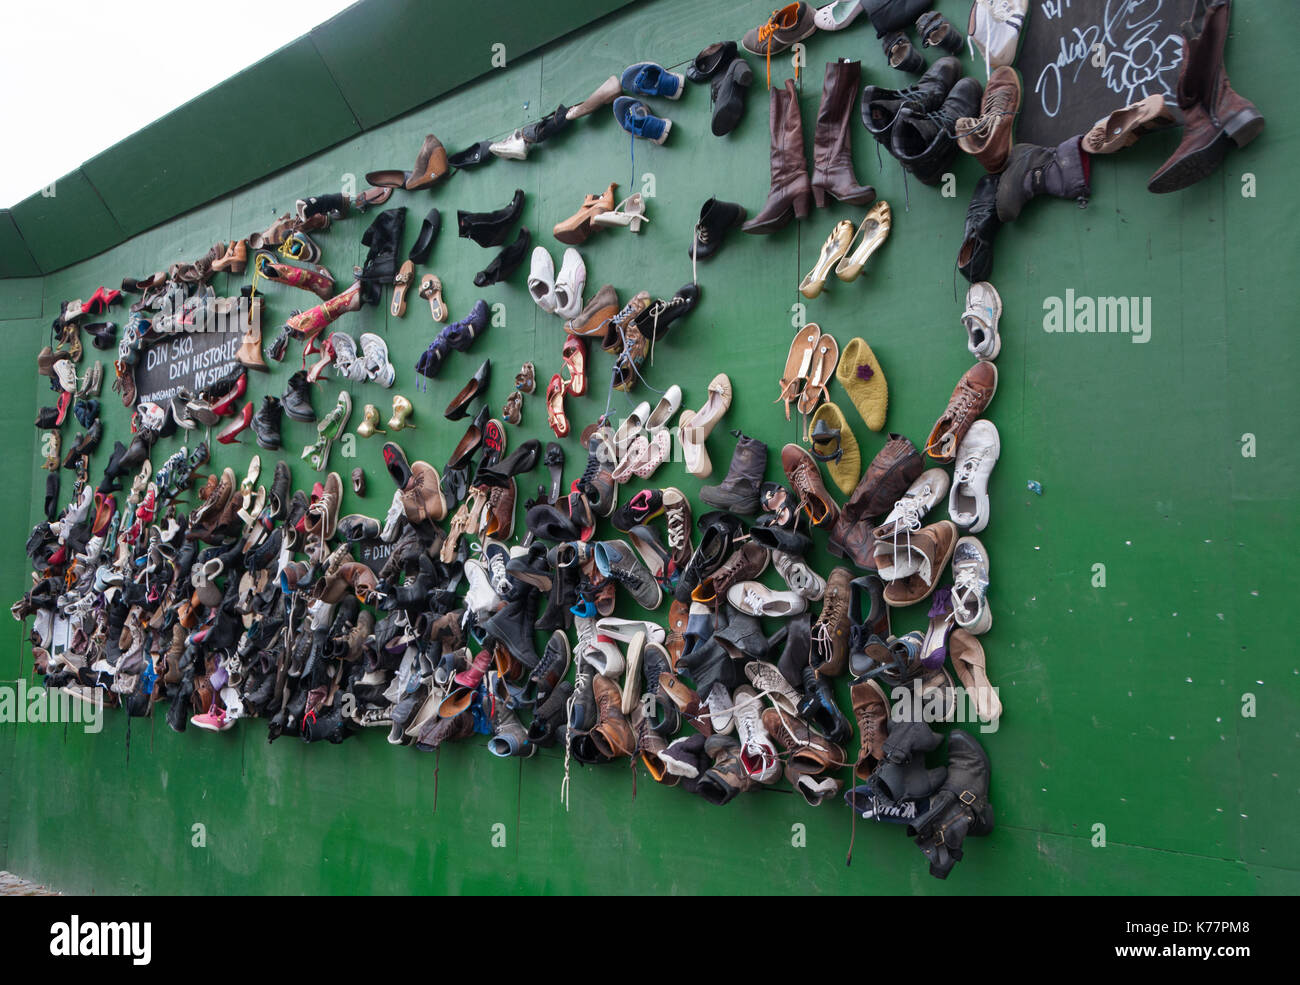 Un mur de chaussures pour la charité à Copenhague au Danemark. Banque D'Images